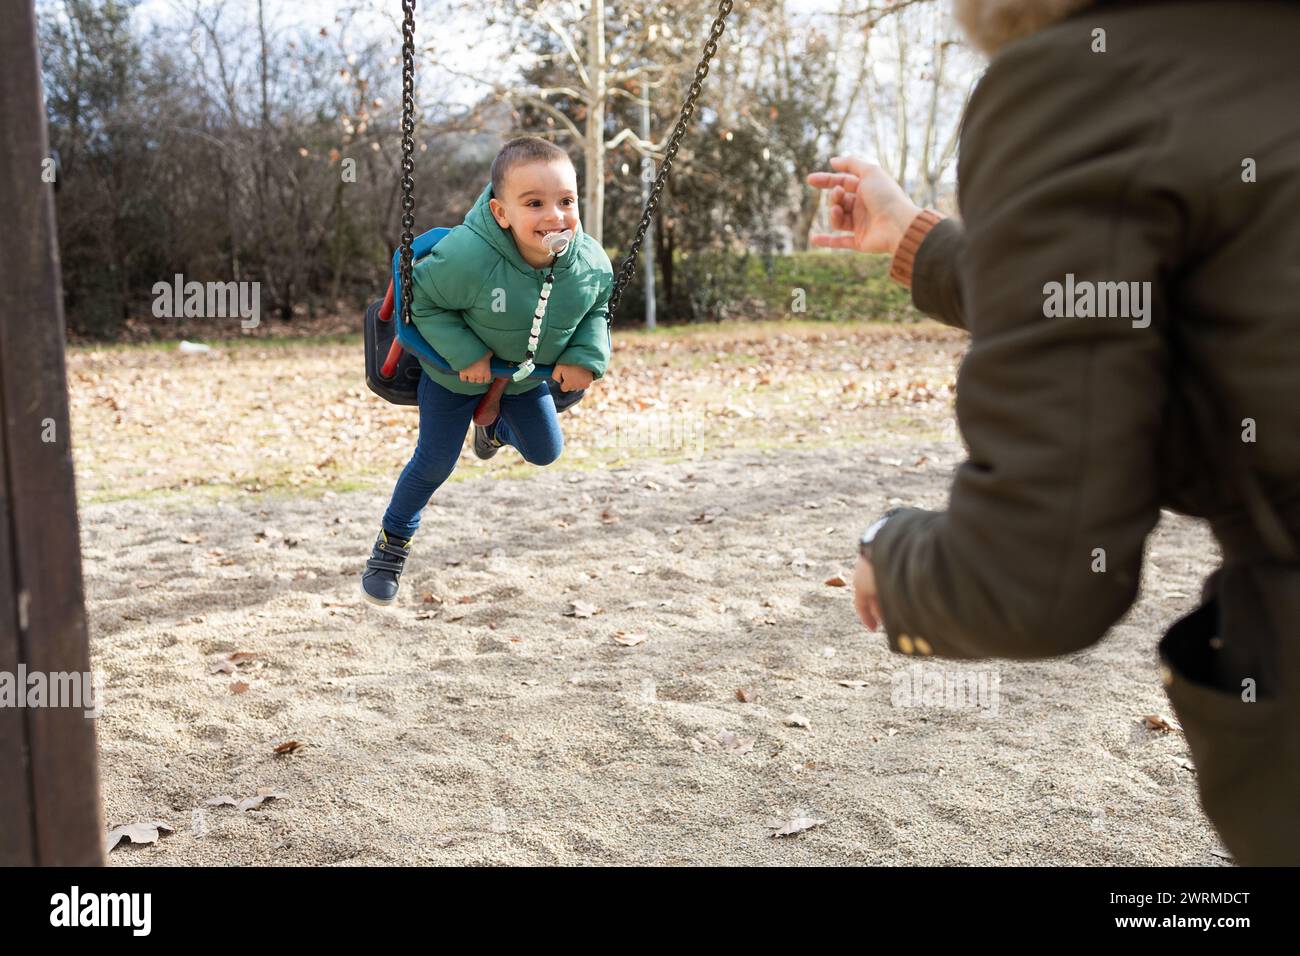 Ein verspielter Moment, in dem ein kleines Kind kichert, während es sich in einem sonnigen Park auf eine ausgebreitete anonyme Hand schwingt Stockfoto